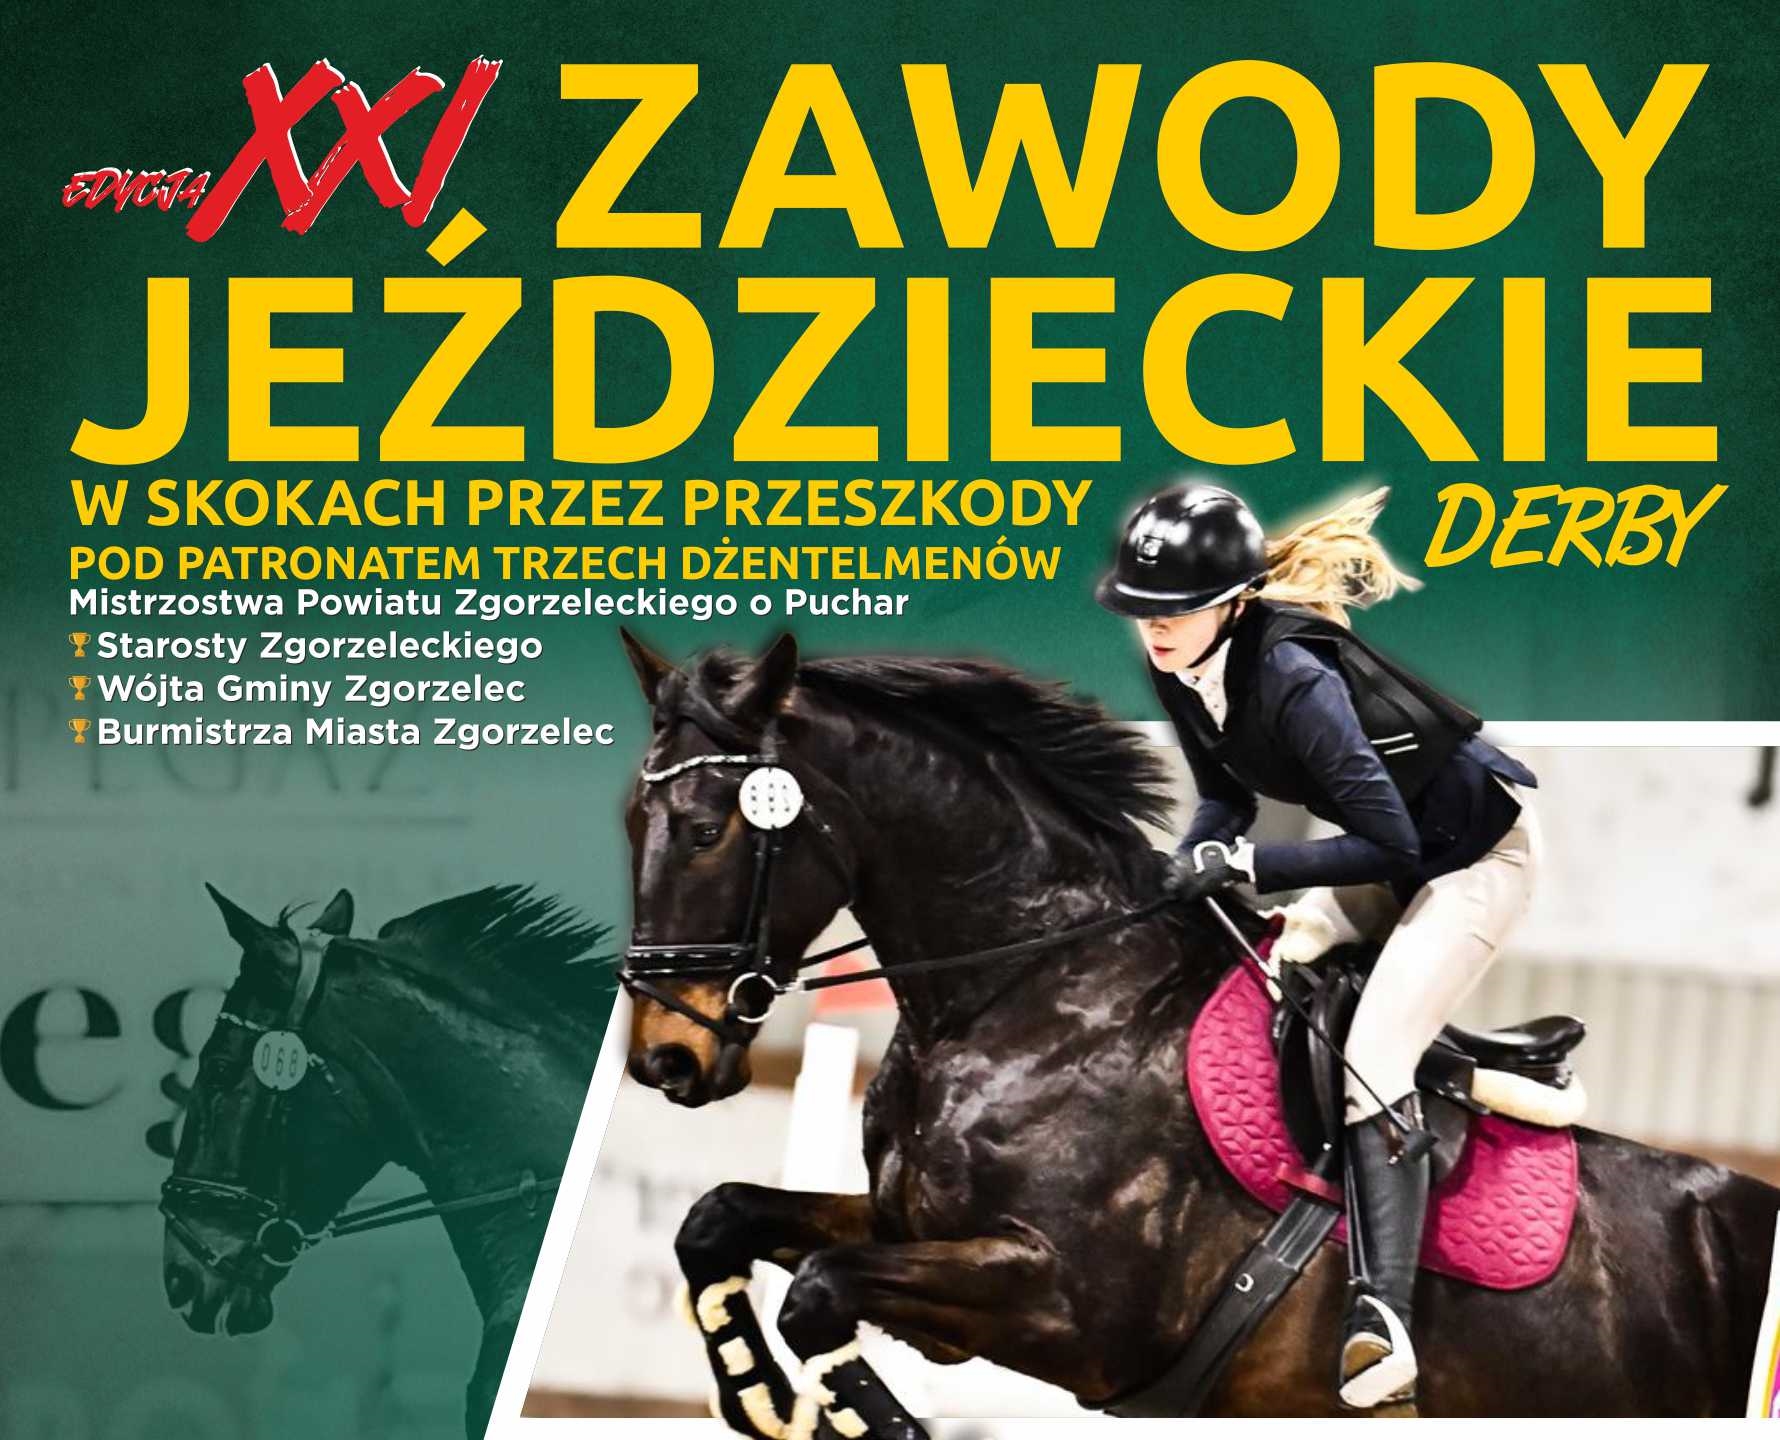 You are currently viewing XXI Zawody Jeździeckie w Skokach przez Przeszkody